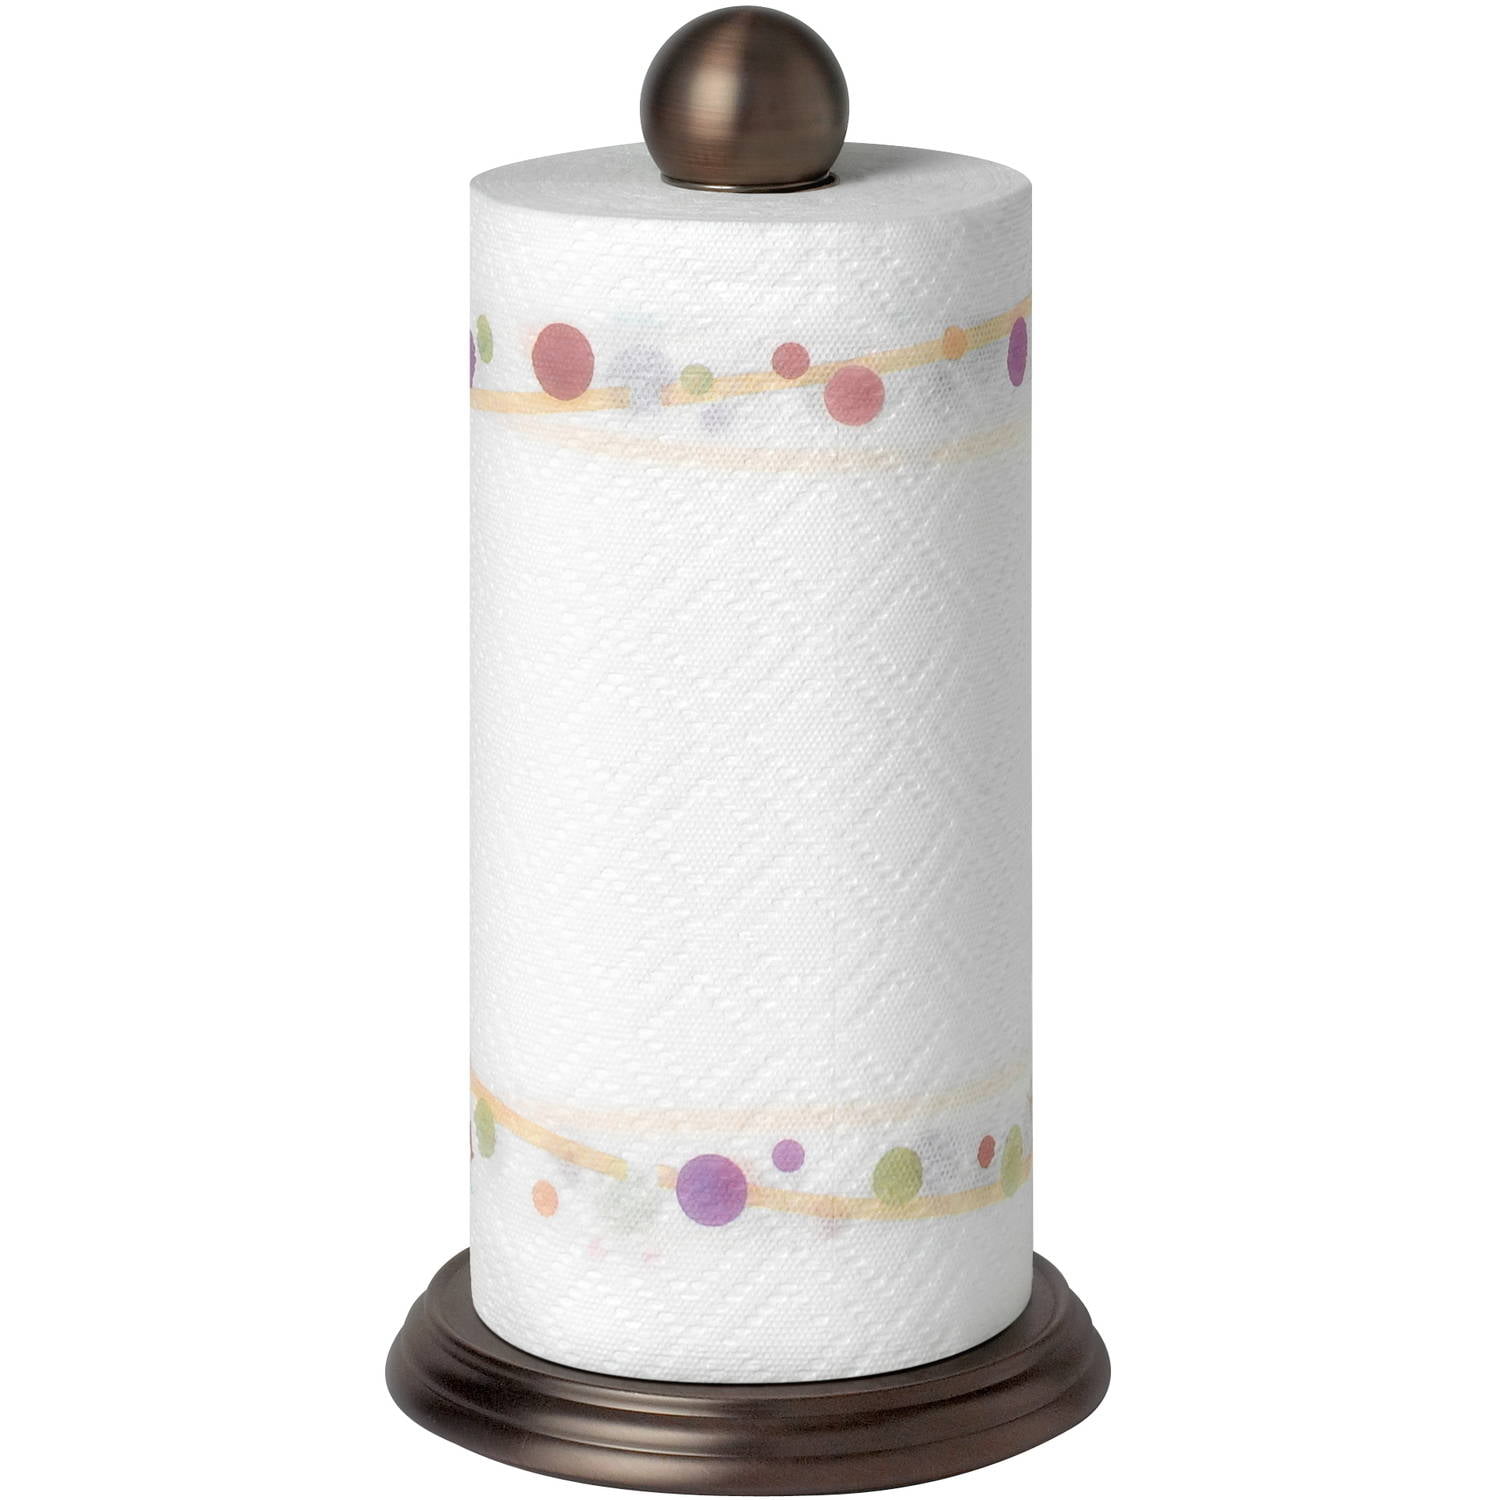 Spectrum Luna Paper Towel Holder, Bronze - Walmart.com - 